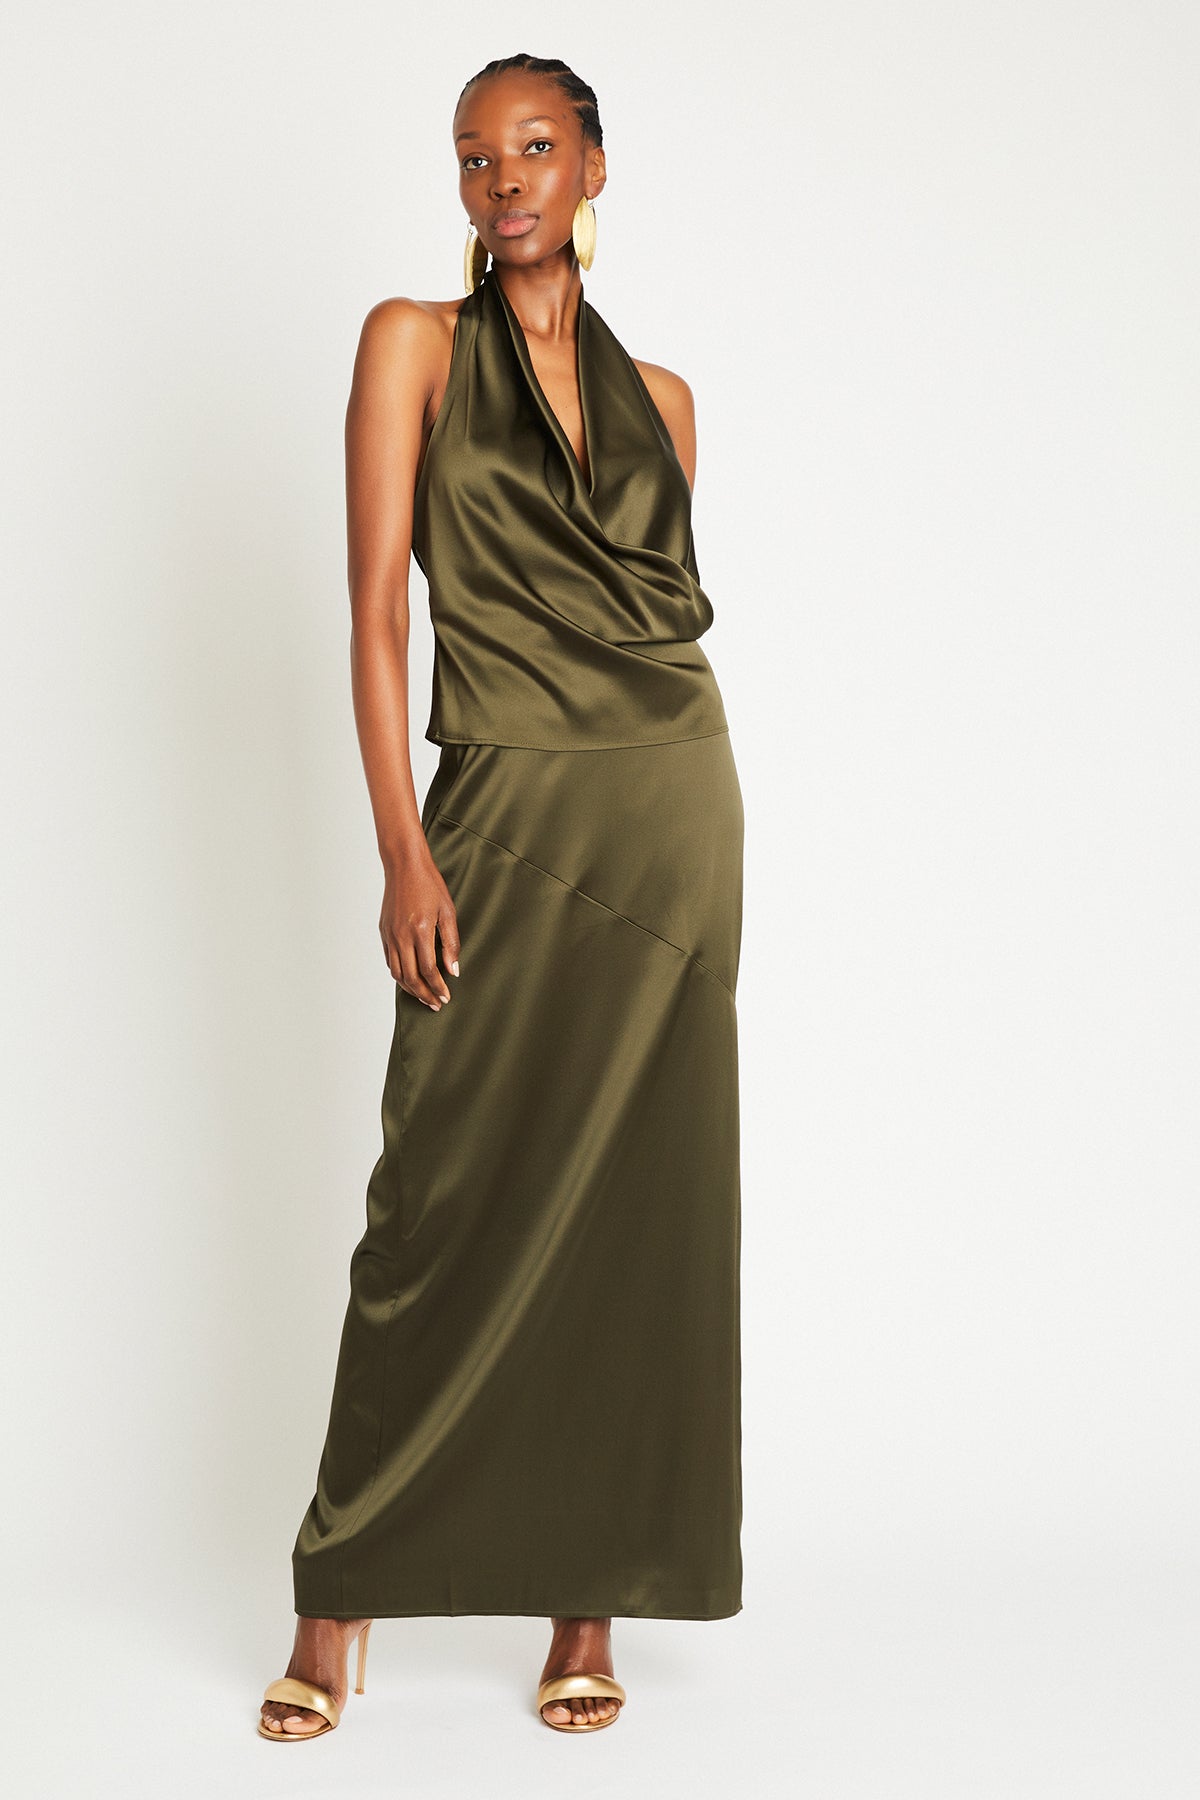 + Beryll Naomi Silk Skirt | Olive - + Beryll Naomi Silk Skirt | Olive